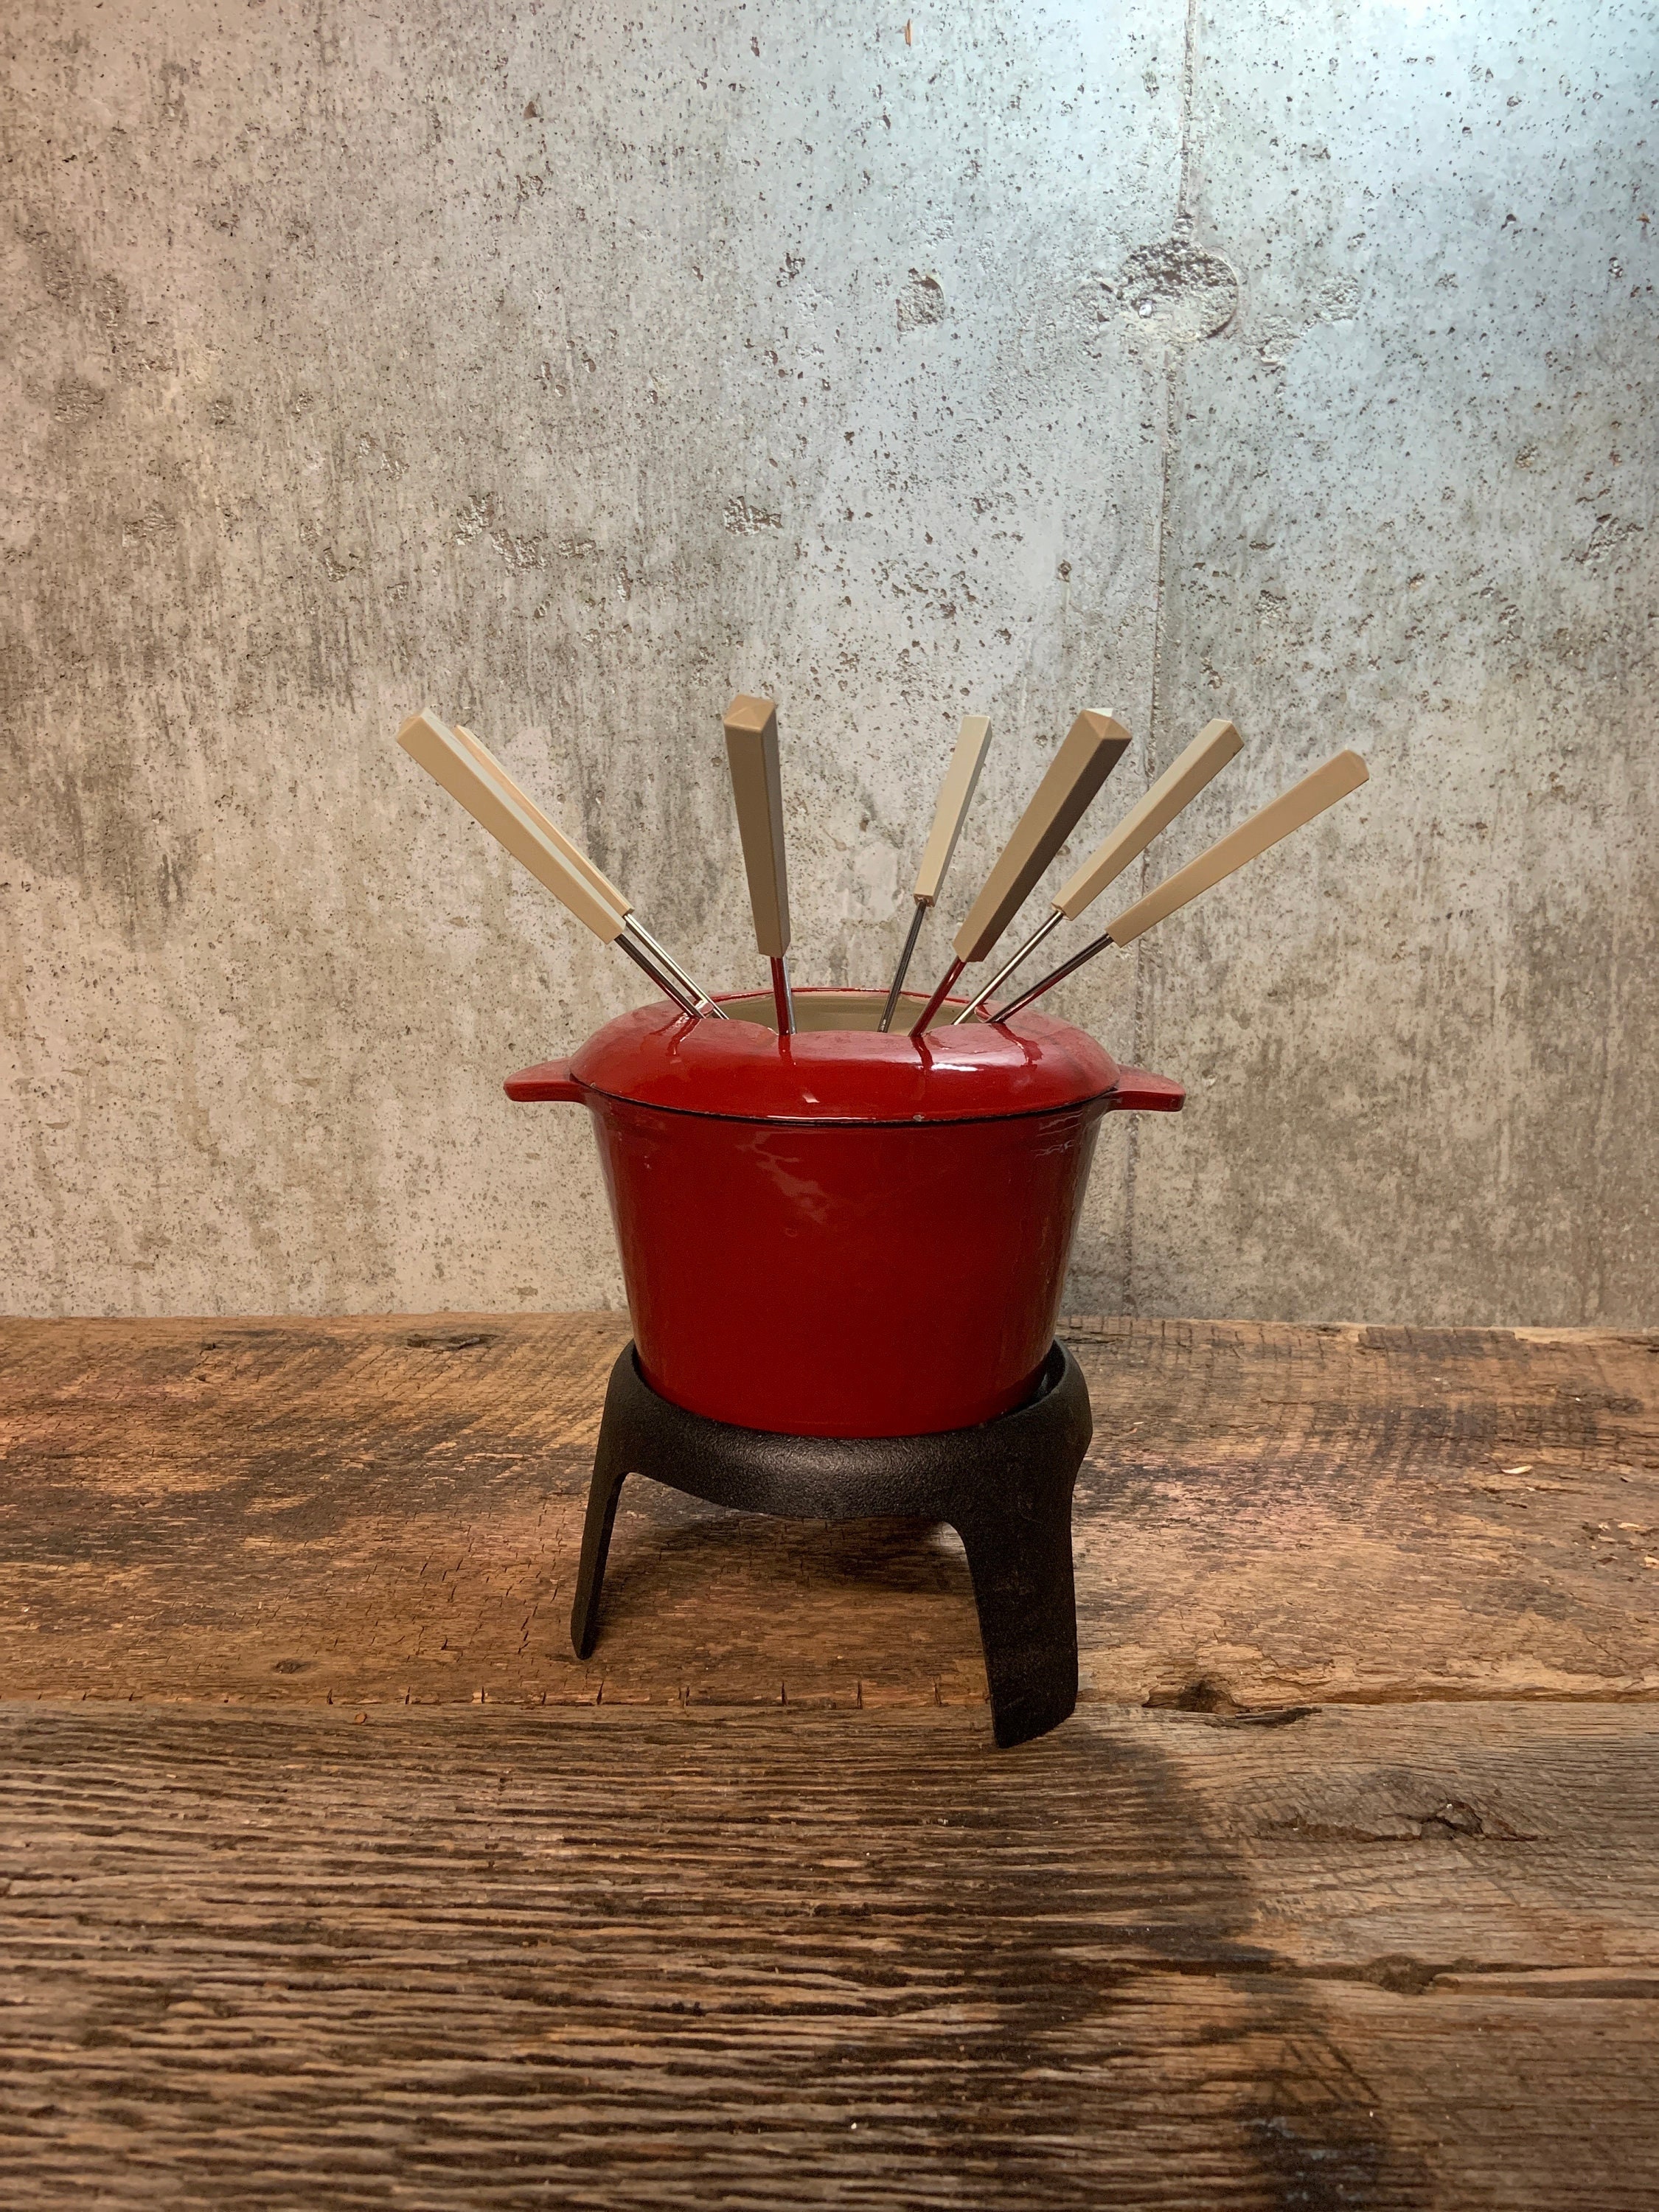 Evelots Mini Fondue Pot Set/Personal Fondue Mugs-Chocolate/Cheese/14-P